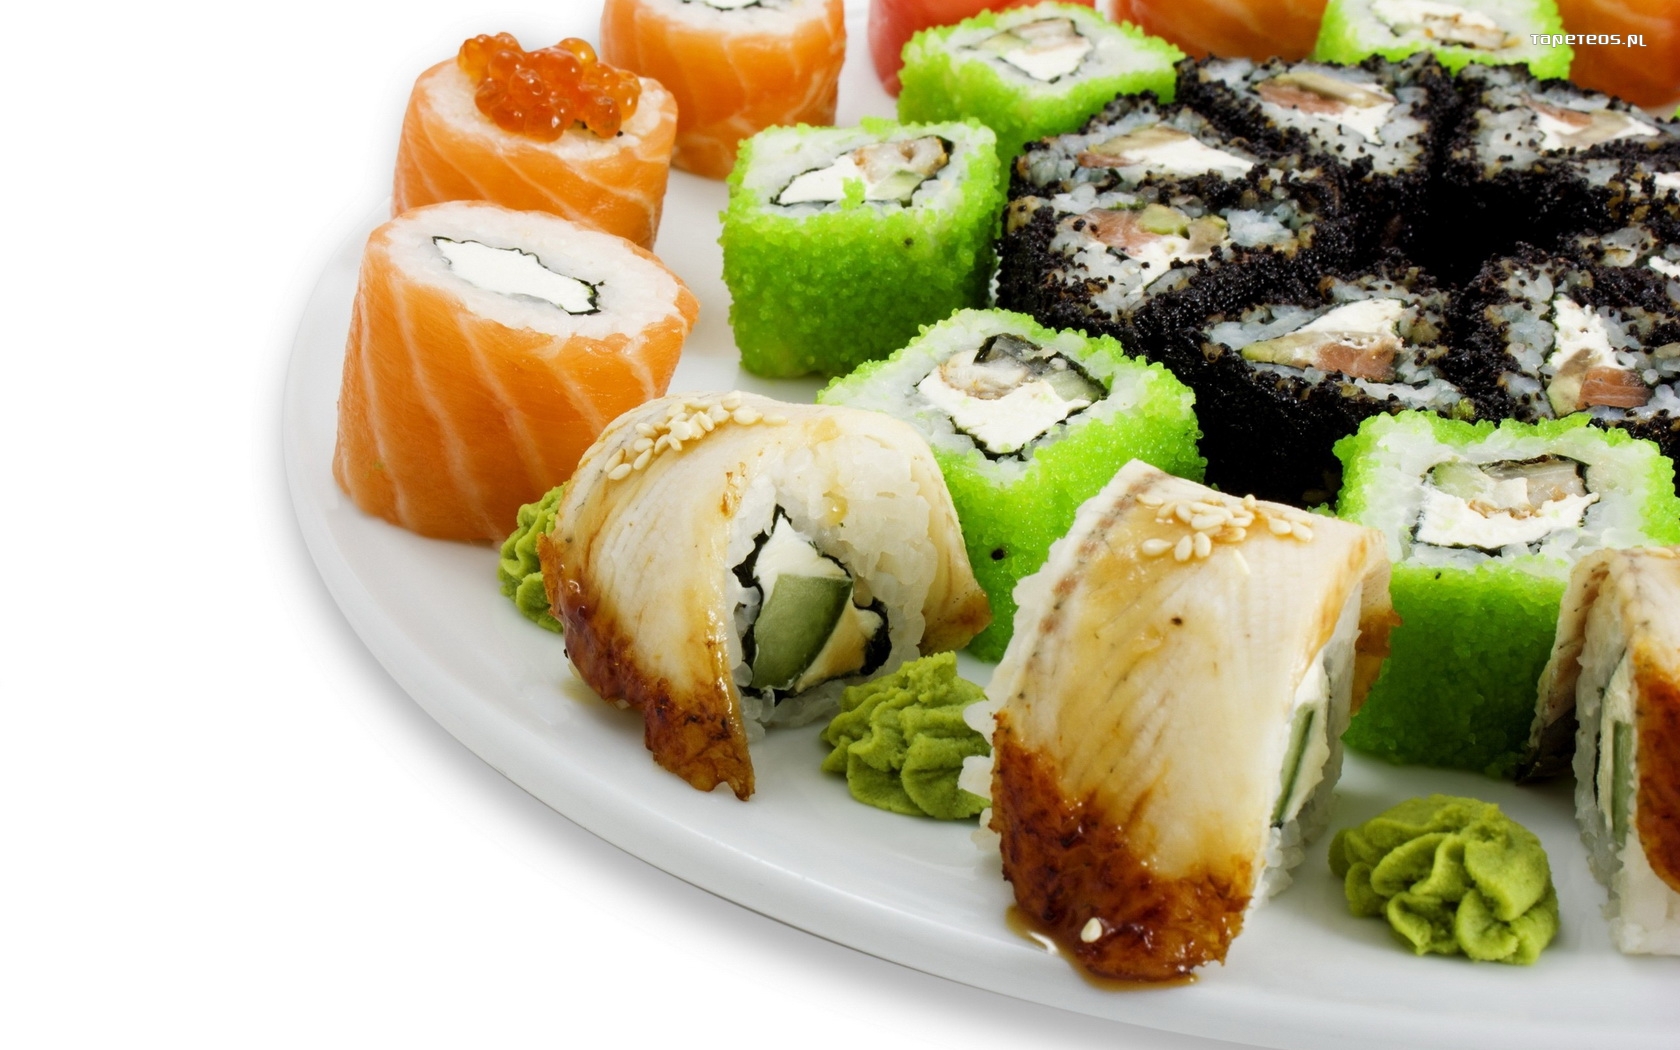 Sushi 049 Talerz, Maki, Wasabi